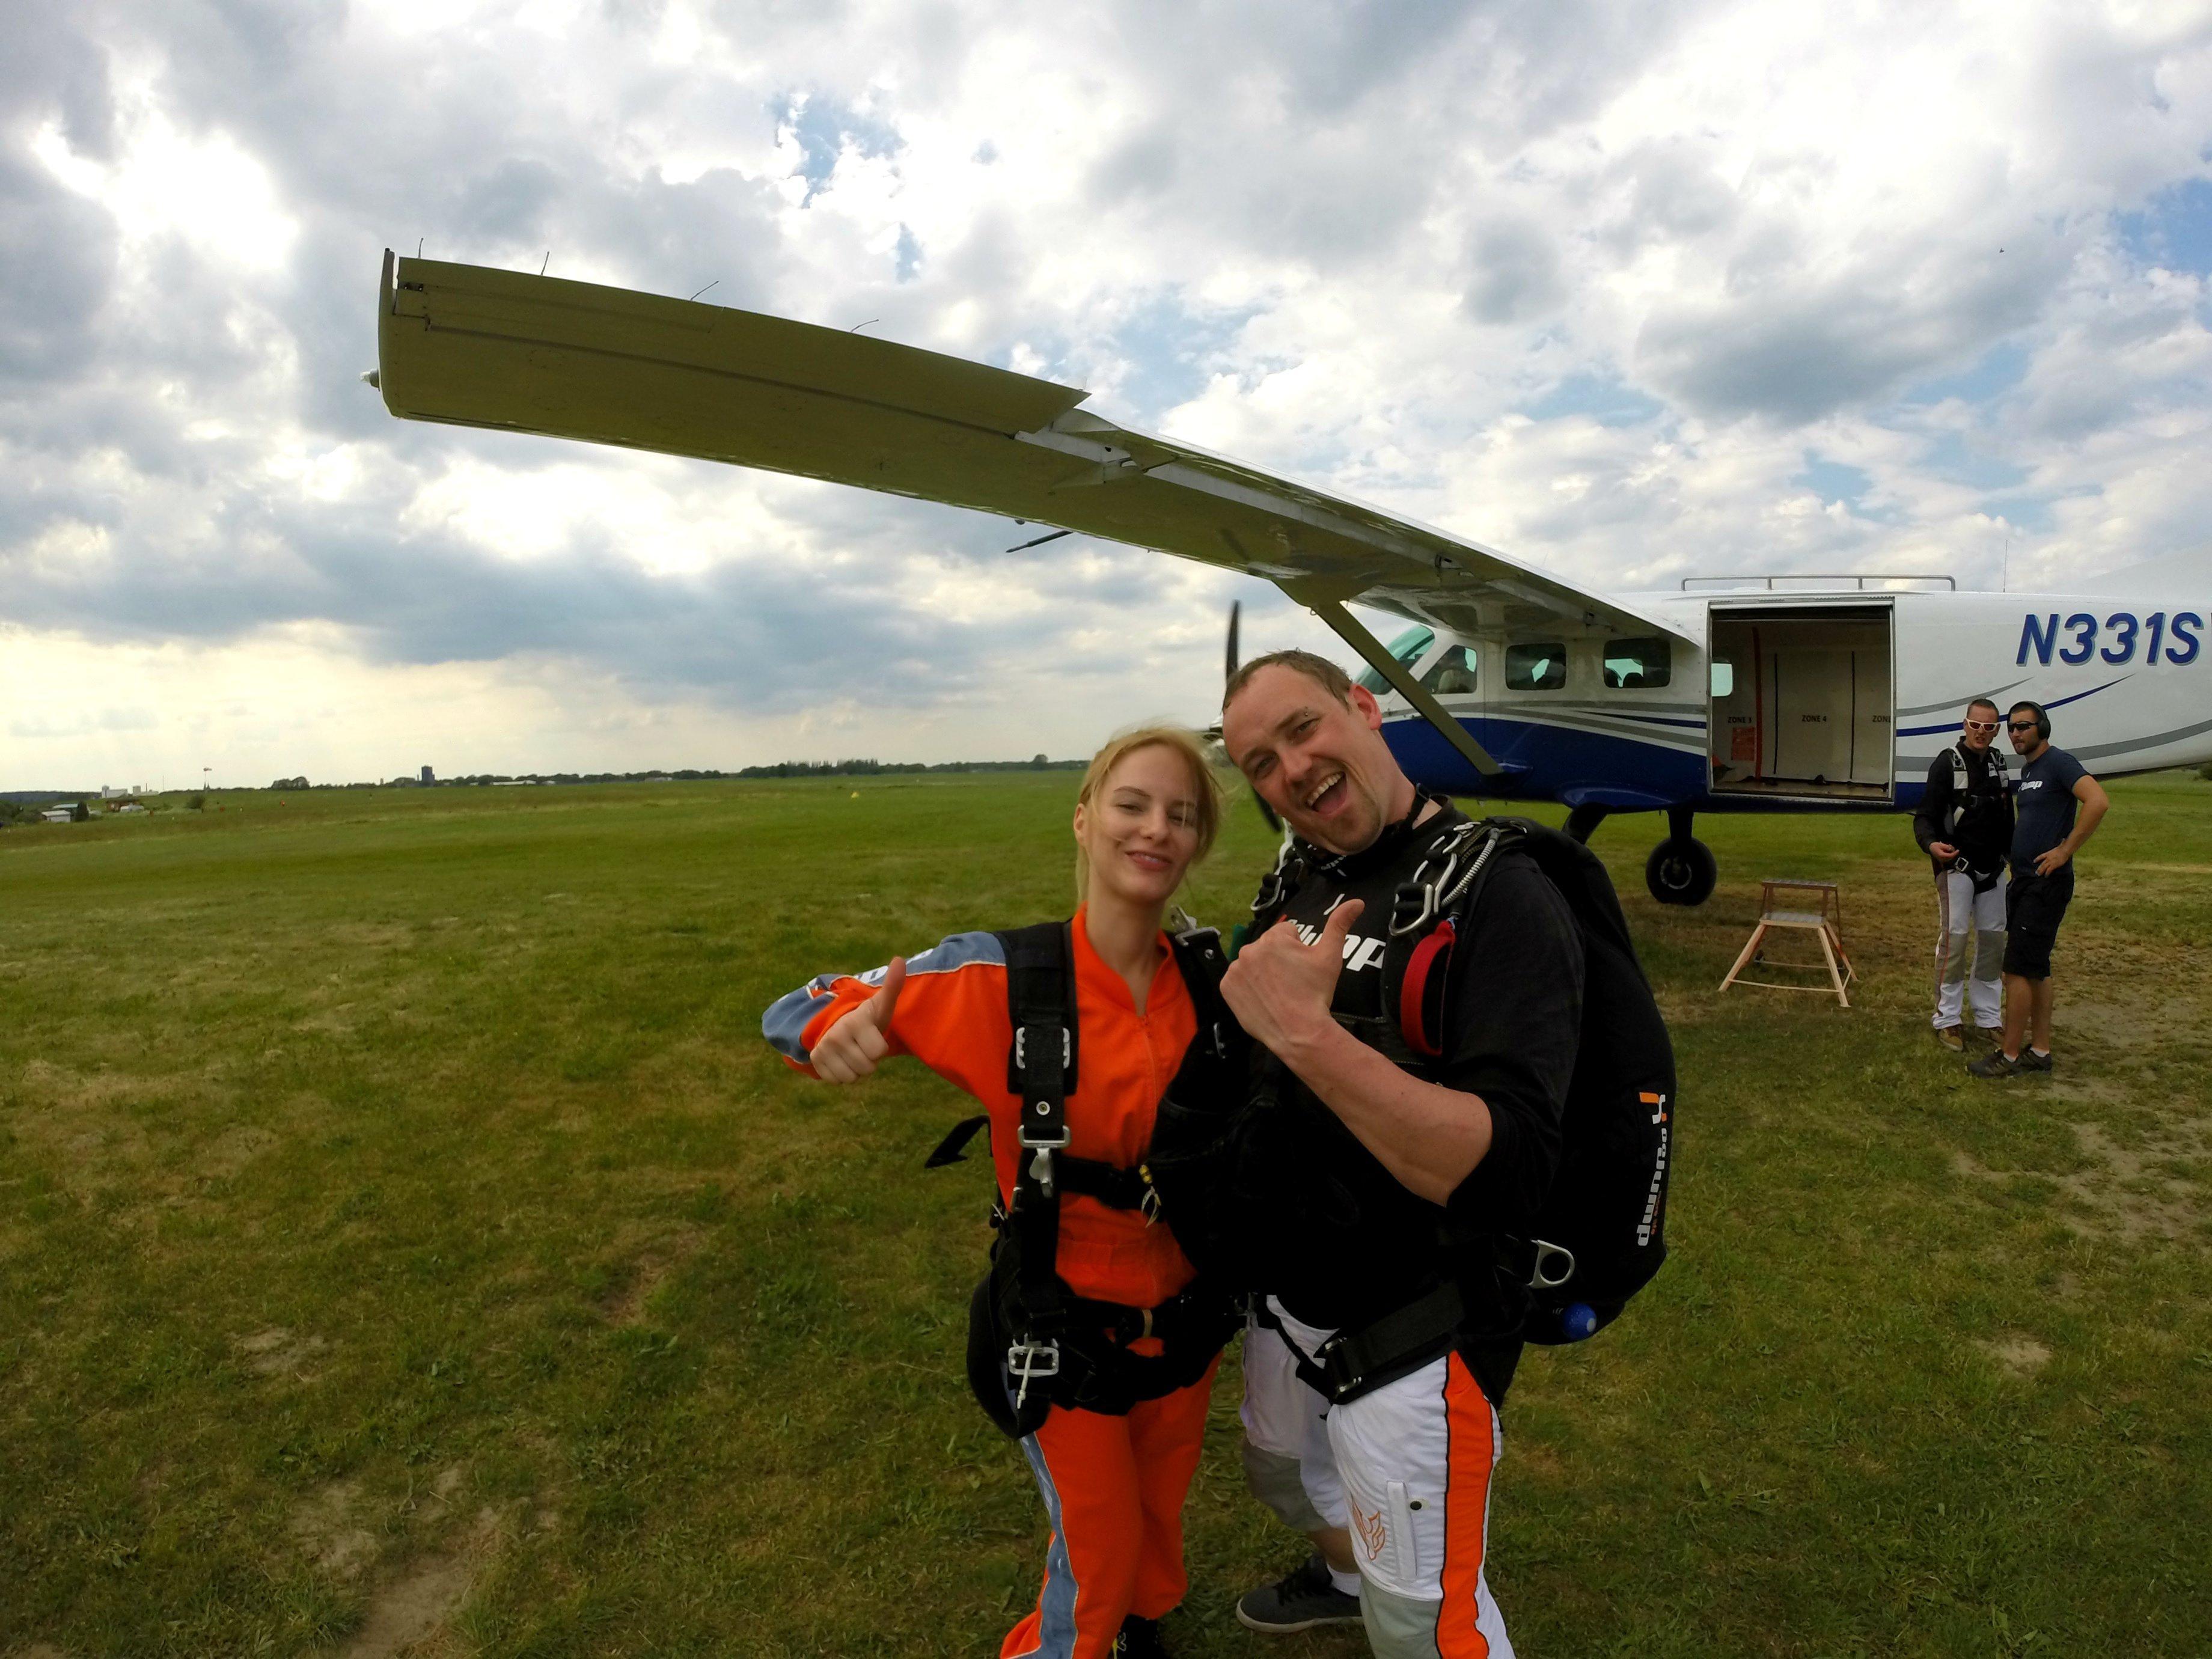 Ölümle yaşam arasında uçmak: Skydiving